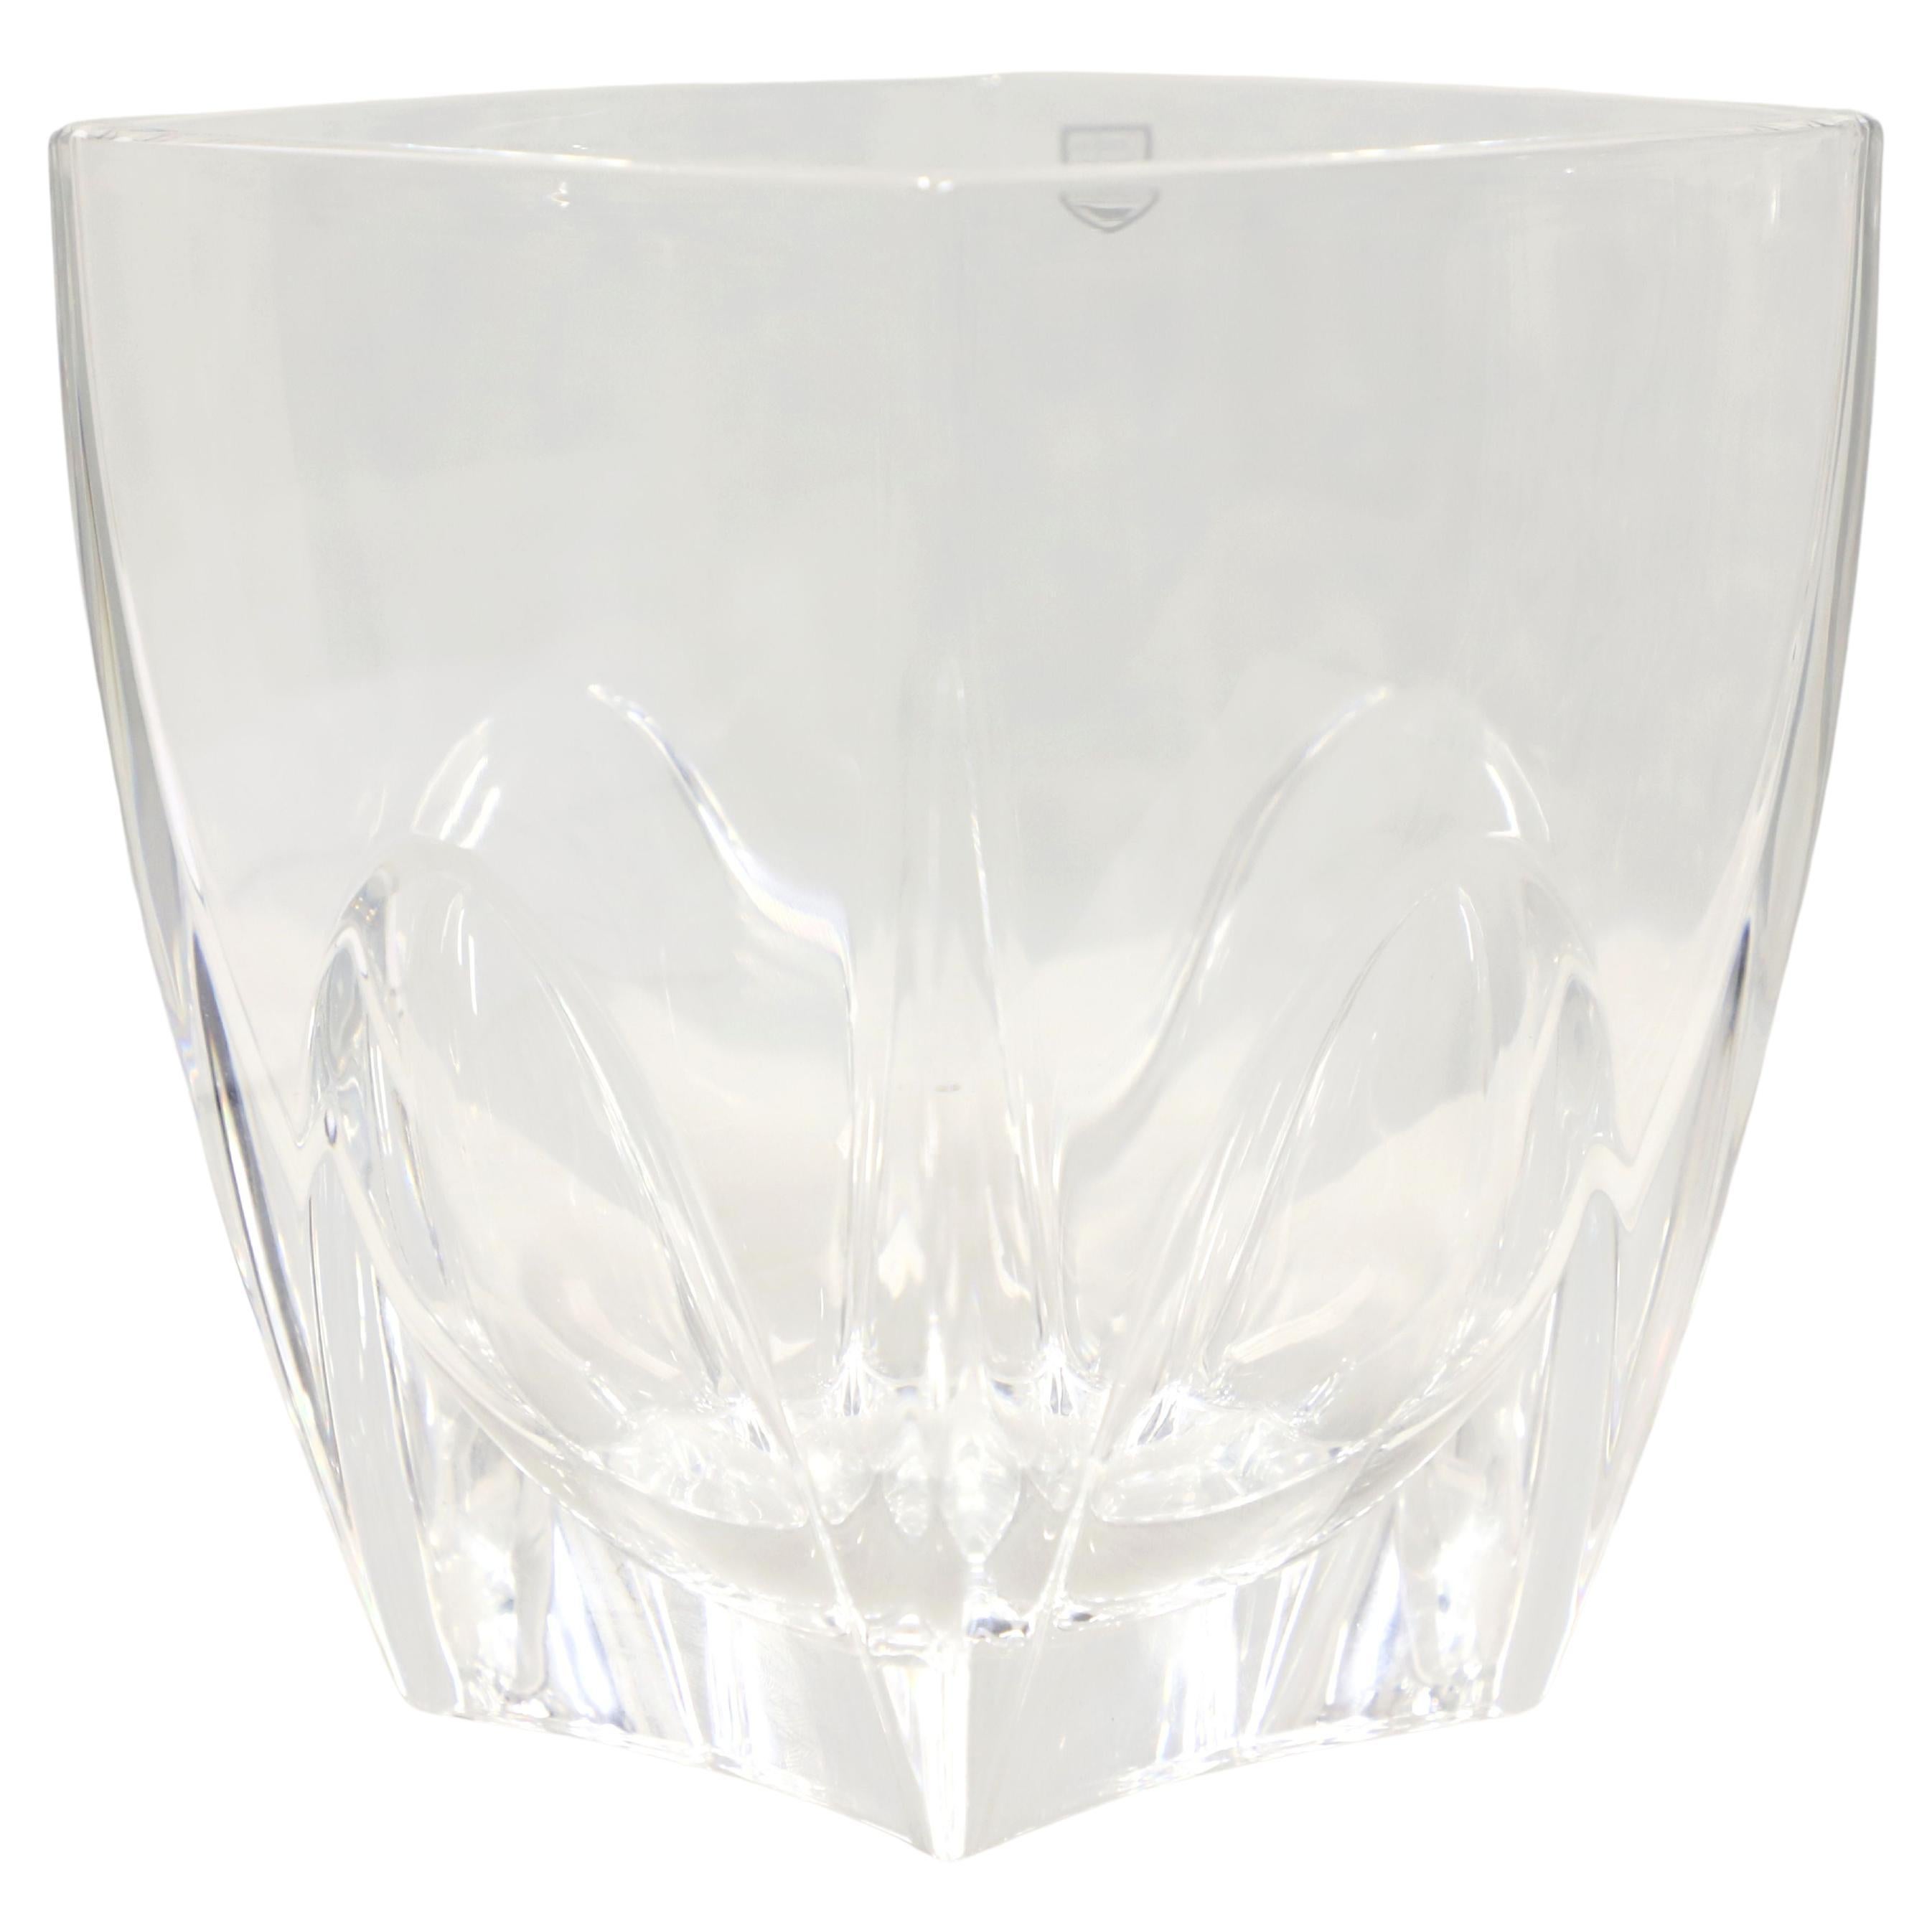 ORREFORS Sweden 7" Square Clear Crystal Vase - B For Sale